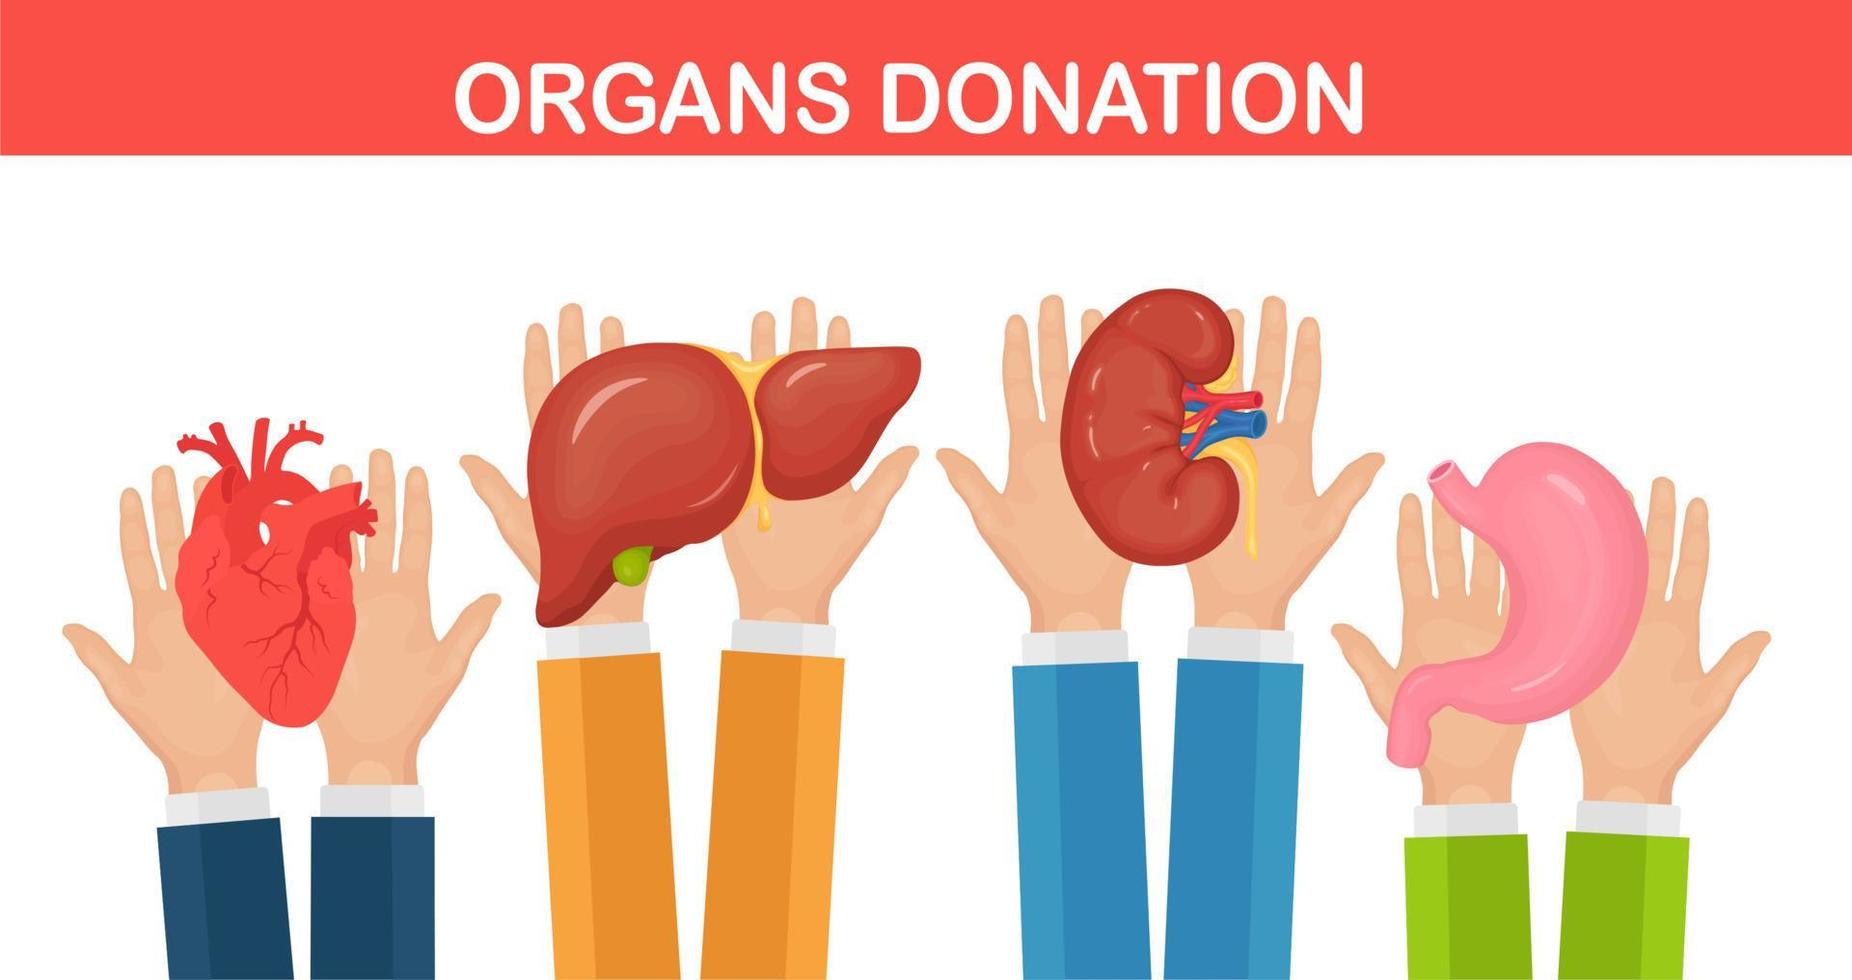 órgãos de doação. mãos de médicos seguram rim de doador, coração, fígado, estômago para transplante vetor